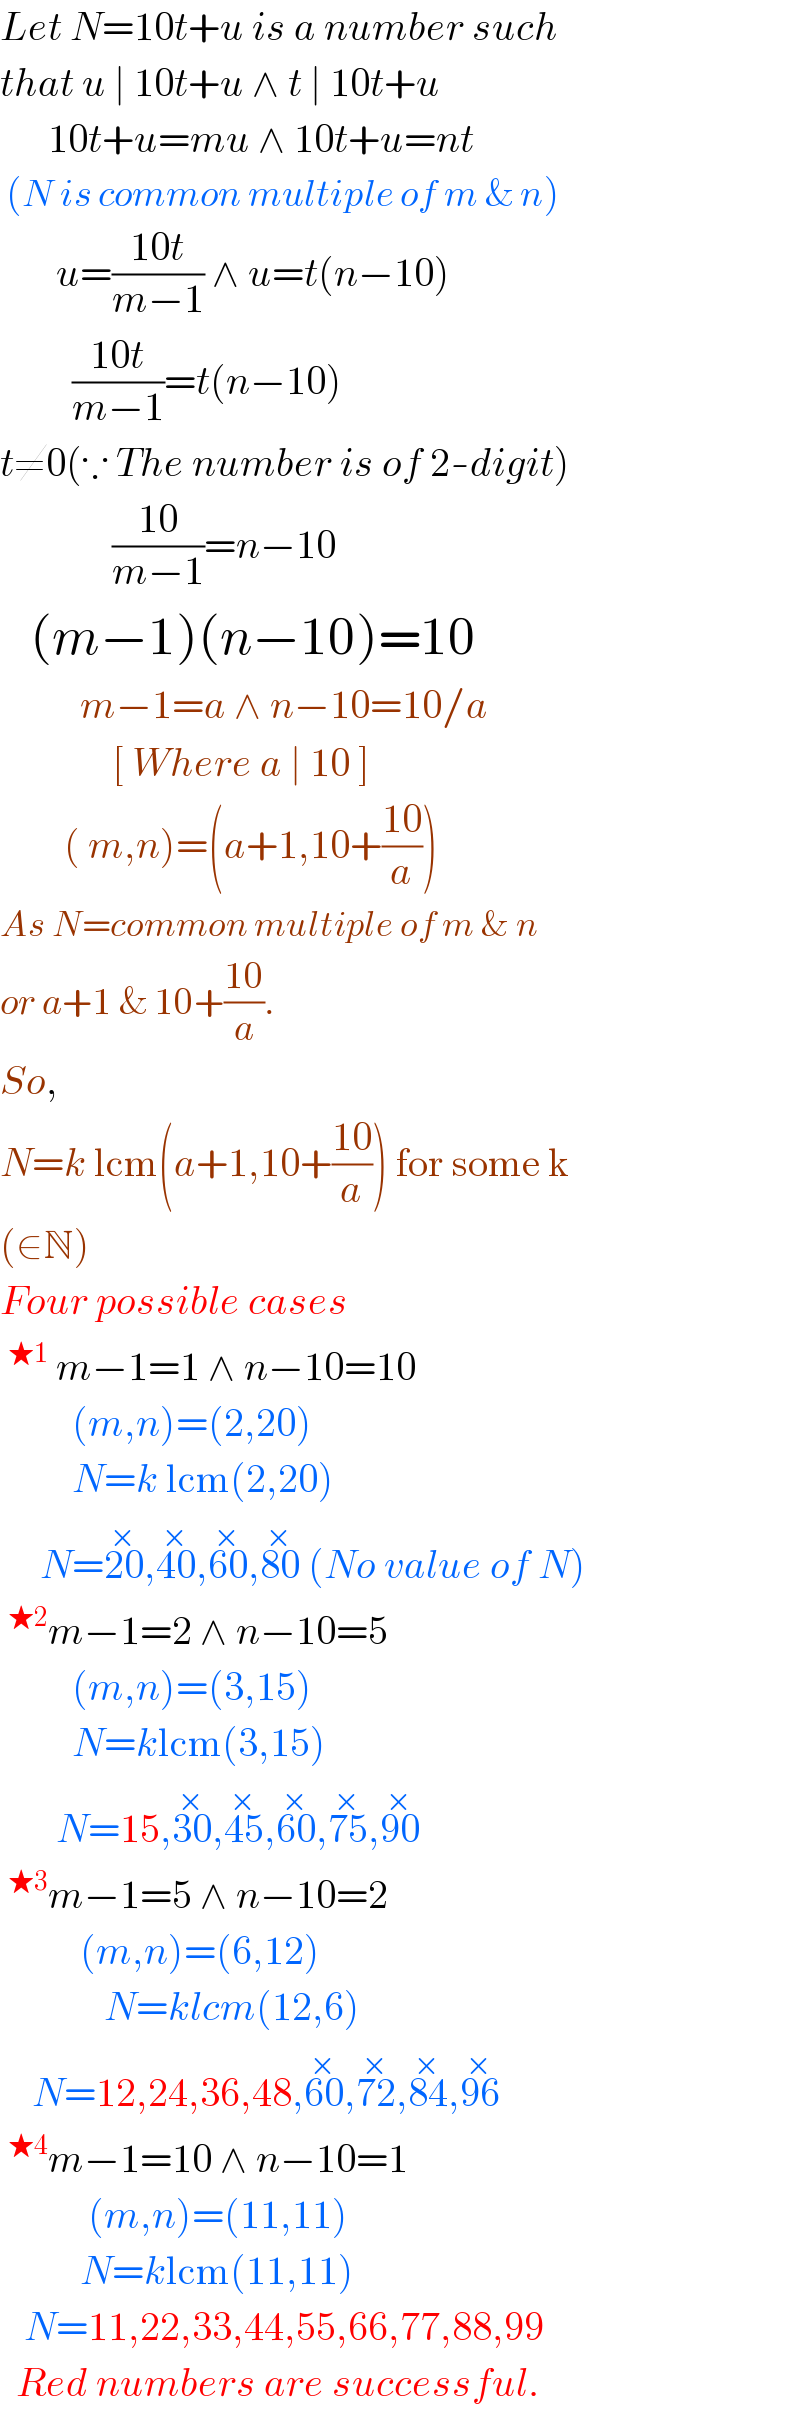 Let N=10t+u is a number such  that u ∣ 10t+u ∧ t ∣ 10t+u        10t+u=mu ∧ 10t+u=nt   (N is common multiple of m & n)         u=((10t)/(m−1)) ∧ u=t(n−10)           ((10t)/(m−1))=t(n−10)  t≠0(∵ The number is of 2-digit)                ((10)/(m−1))=n−10     (m−1)(n−10)=10            m−1=a ∧ n−10=10/a                [ Where a ∣ 10 ]          ( m,n)=(a+1,10+((10)/a))  As N=common multiple of m & n  or a+1 & 10+((10)/a).   So,  N=k lcm(a+1,10+((10)/a)) for some k  (∈N)  Four possible cases  ^(★1)  m−1=1 ∧ n−10=10           (m,n)=(2,20)           N=k lcm(2,20)       N=20^(×) ,40^(×) ,60^(×) ,80^(×)  (No value of N)  ^(★2) m−1=2 ∧ n−10=5           (m,n)=(3,15)           N=klcm(3,15)         N=15,30^(×) ,45^(×) ,60^(×) ,75^(×) ,90^(×)   ^(★3) m−1=5 ∧ n−10=2            (m,n)=(6,12)               N=klcm(12,6)      N=12,24,36,48,60^(×) ,72^(×) ,84^(×) ,96^(×)   ^(★4) m−1=10 ∧ n−10=1             (m,n)=(11,11)            N=klcm(11,11)     N=11,22,33,44,55,66,77,88,99    Red numbers are successful.  